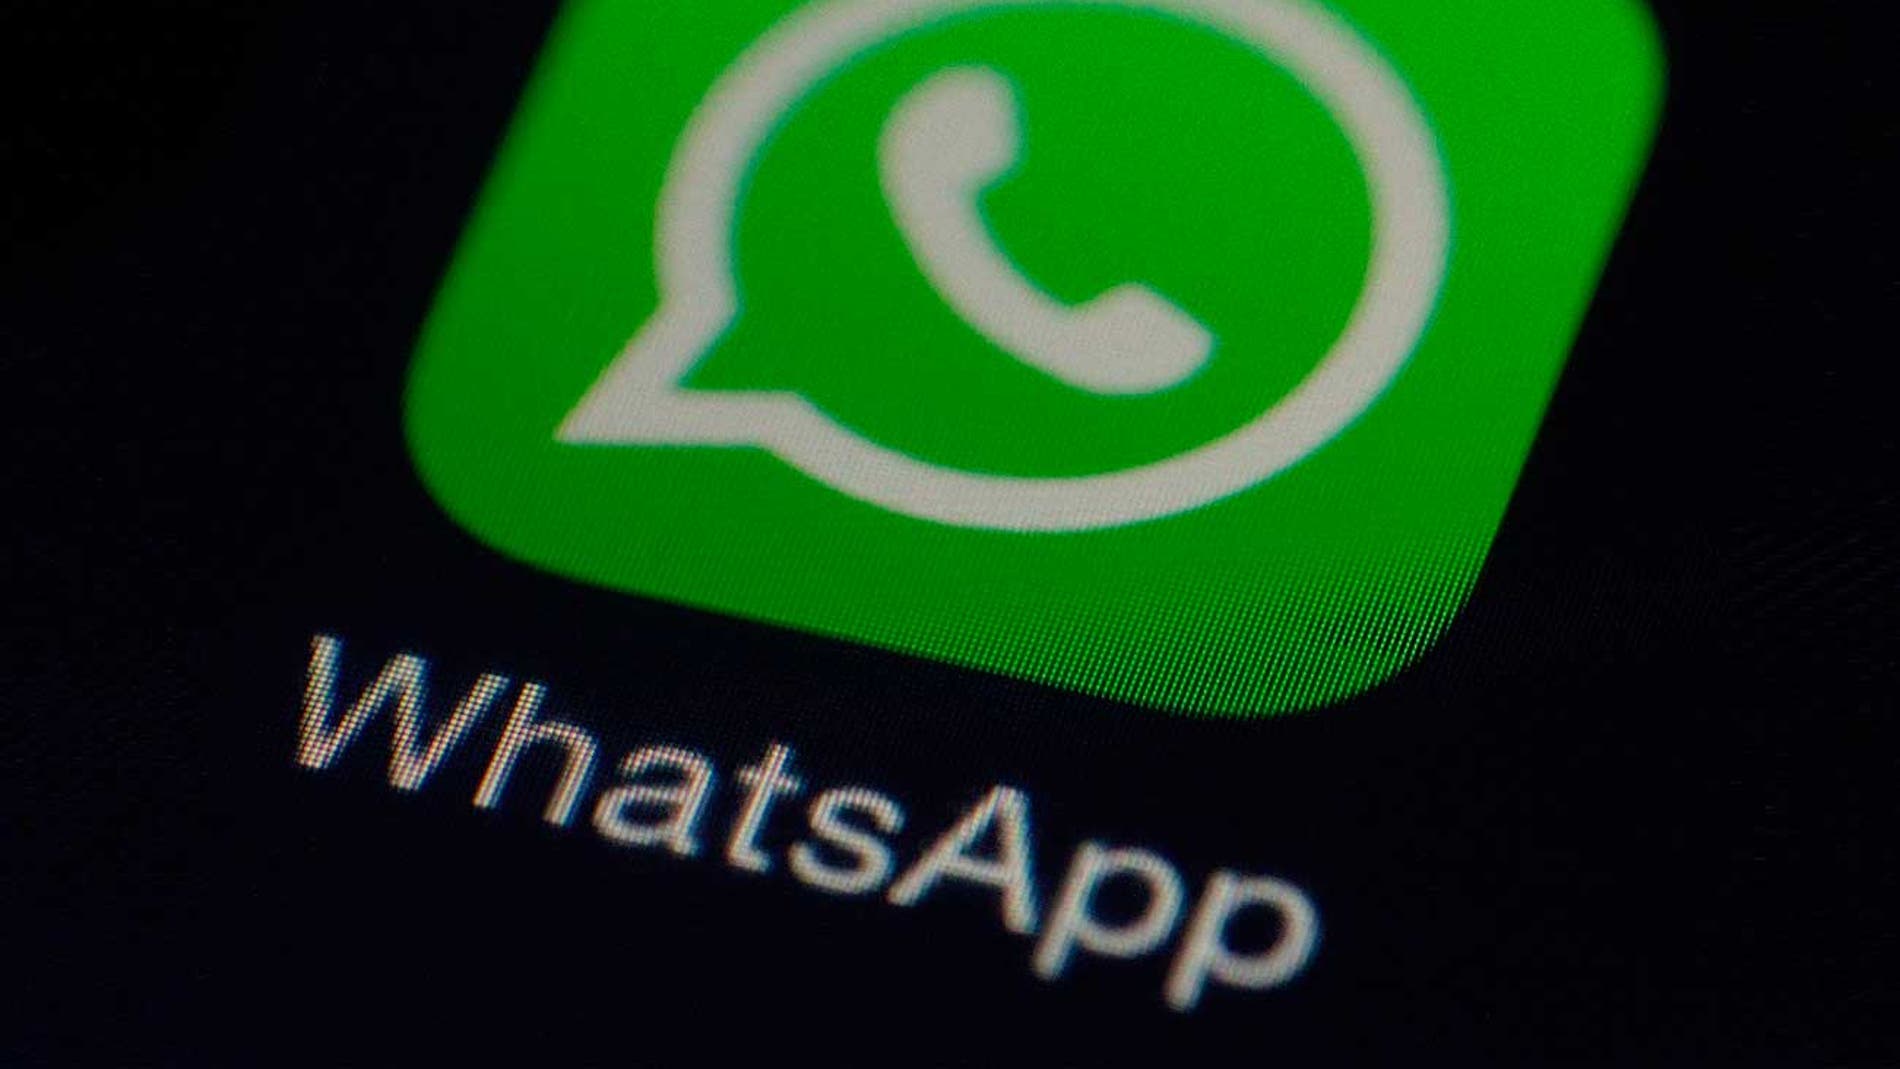 El logo de la aplicación móvil WhatsApp